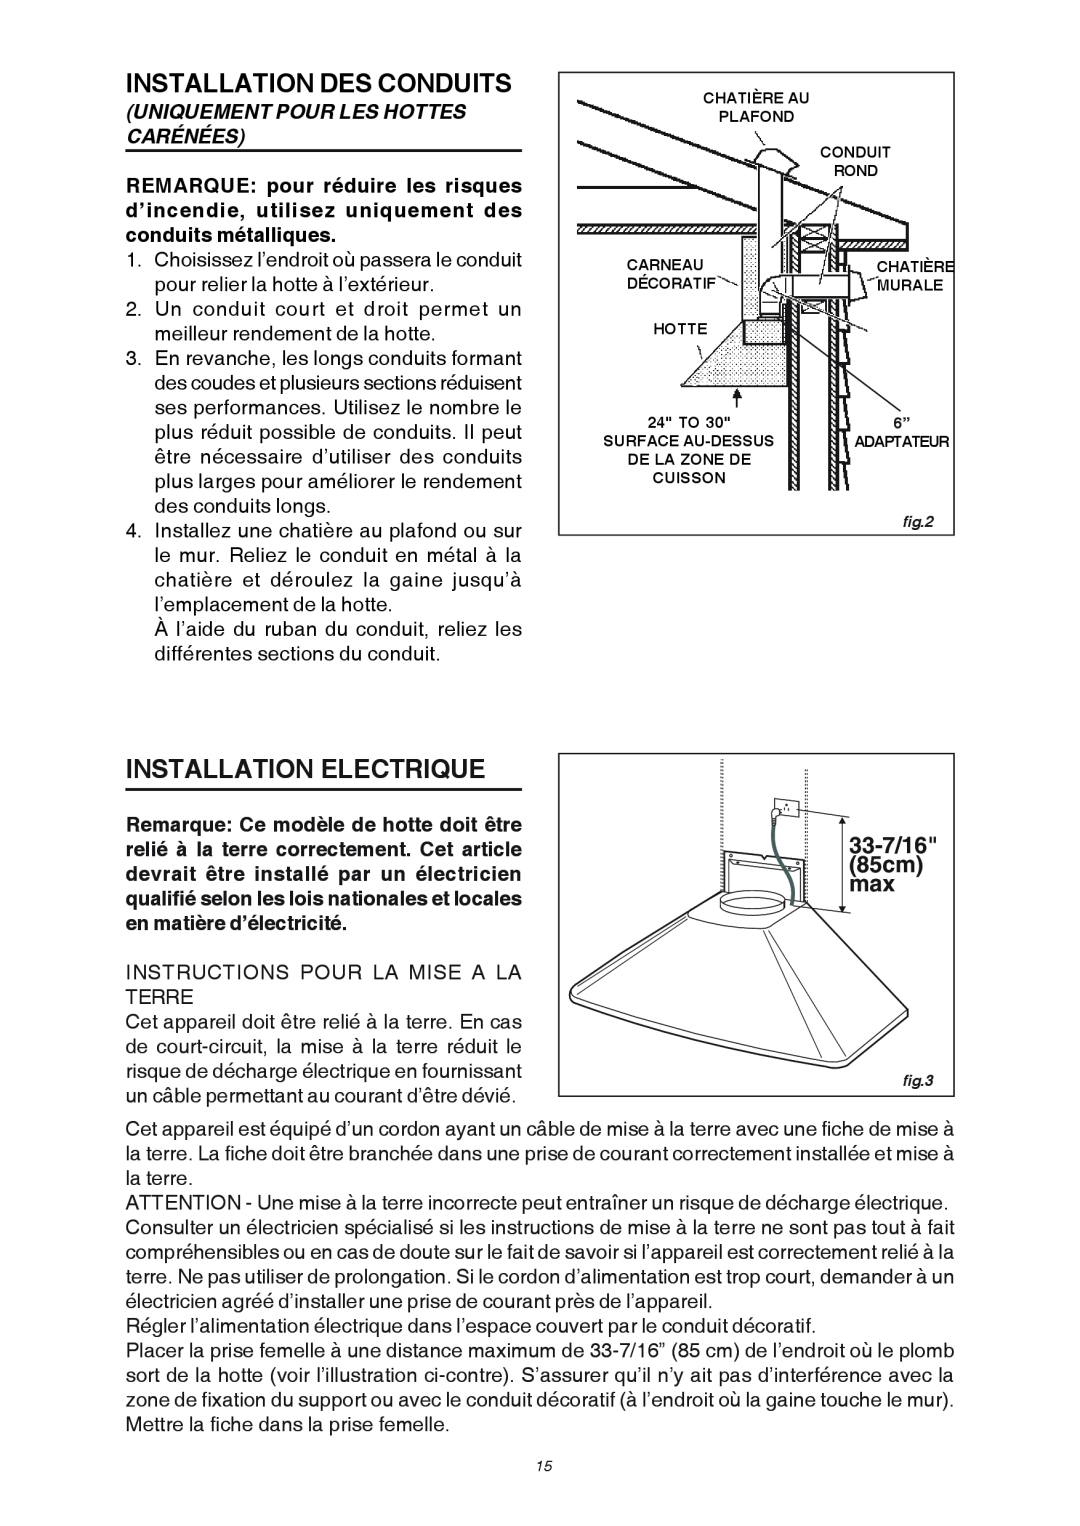 Broan RM503004 Installation Des Conduits, Installation Electrique, Uniquement Pour Les Hottes Carénées, 33-7/16, 85cm 